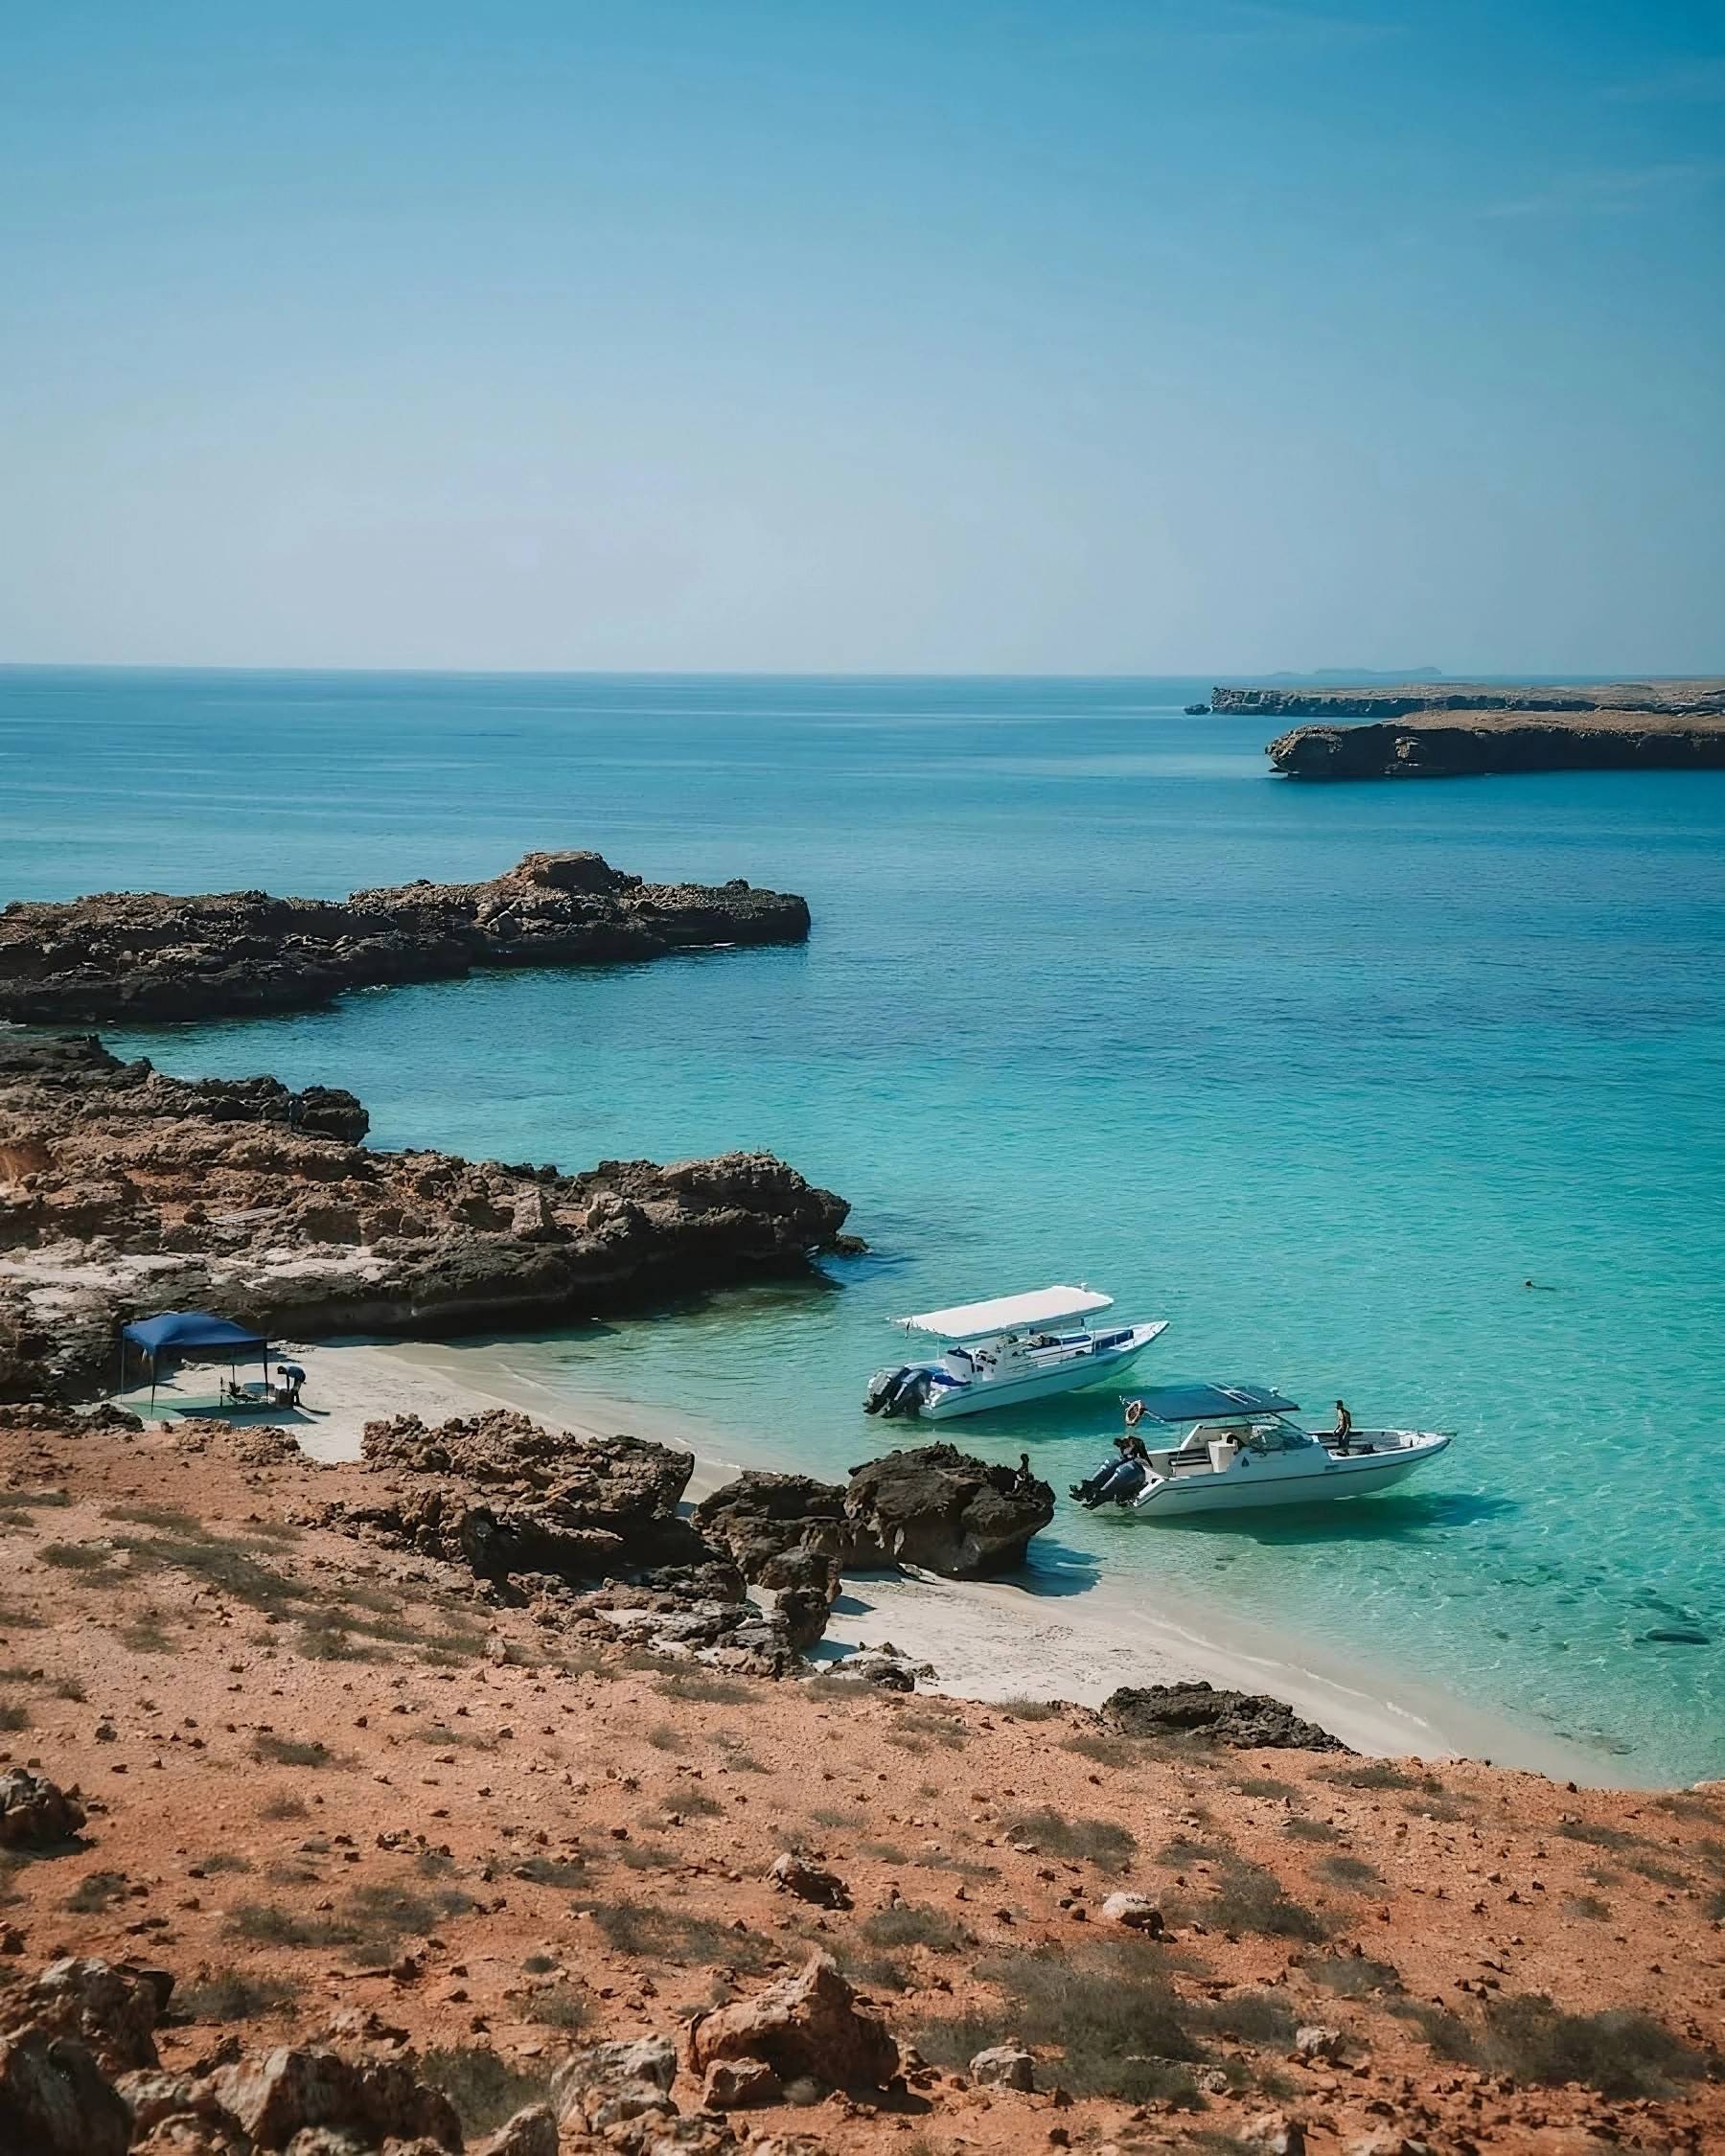 Exploración Costera: Dimanyat Island y Regreso a Muscat